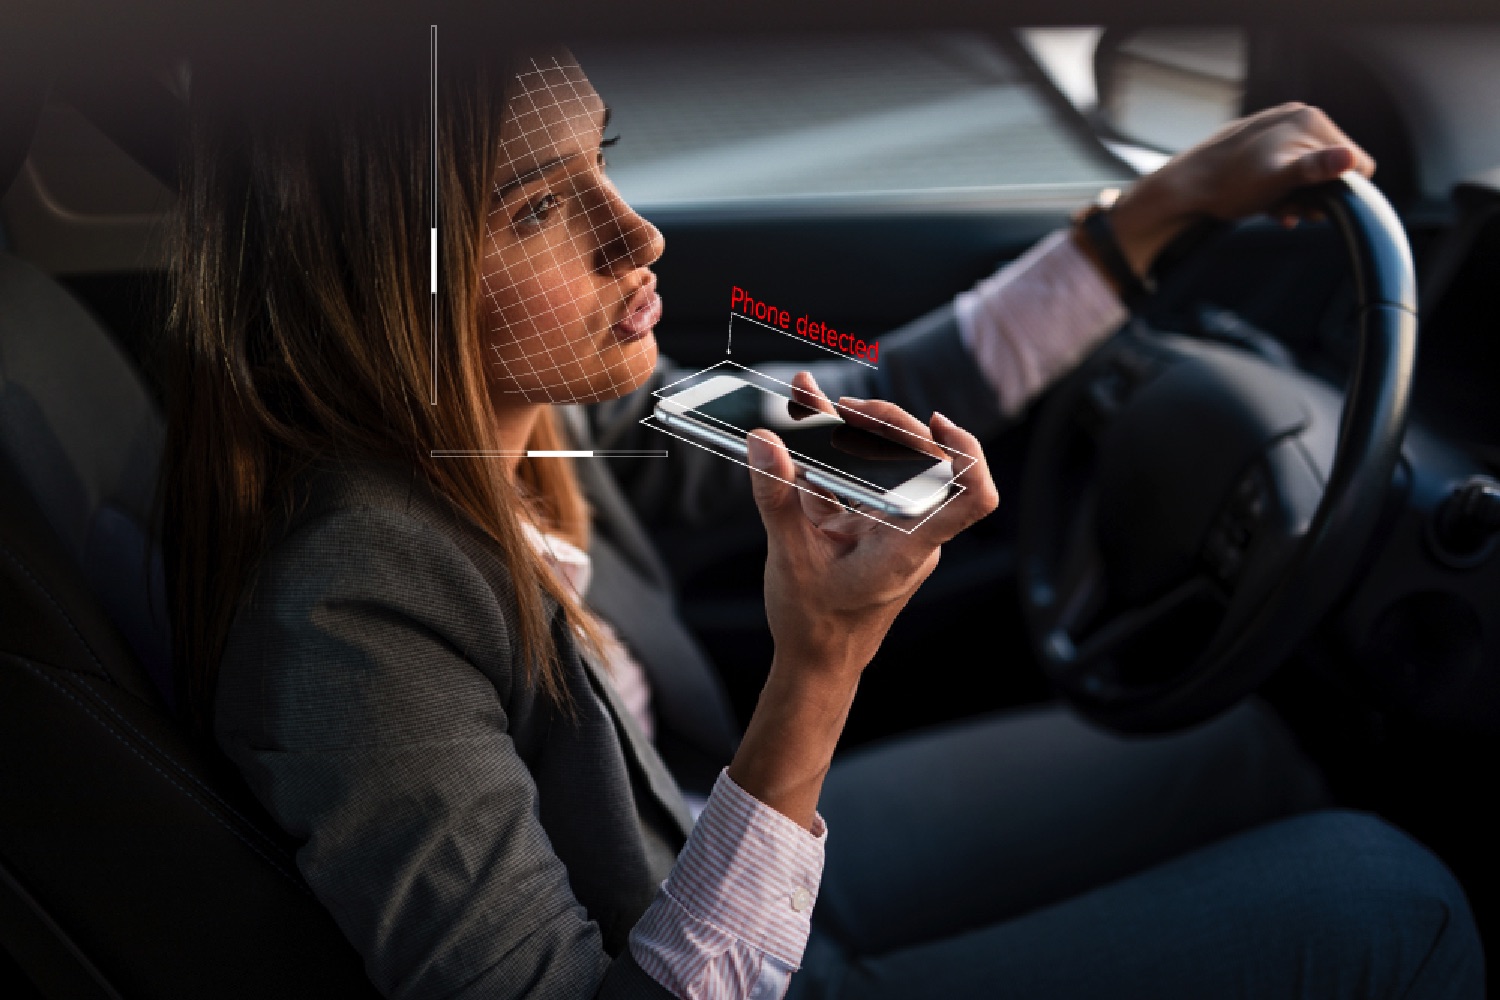 Прослушать разговор по мобильному. Разговор в машине. Человек в машине с телефоном. Девушка с мобильным телефоном. Курит за рулем.